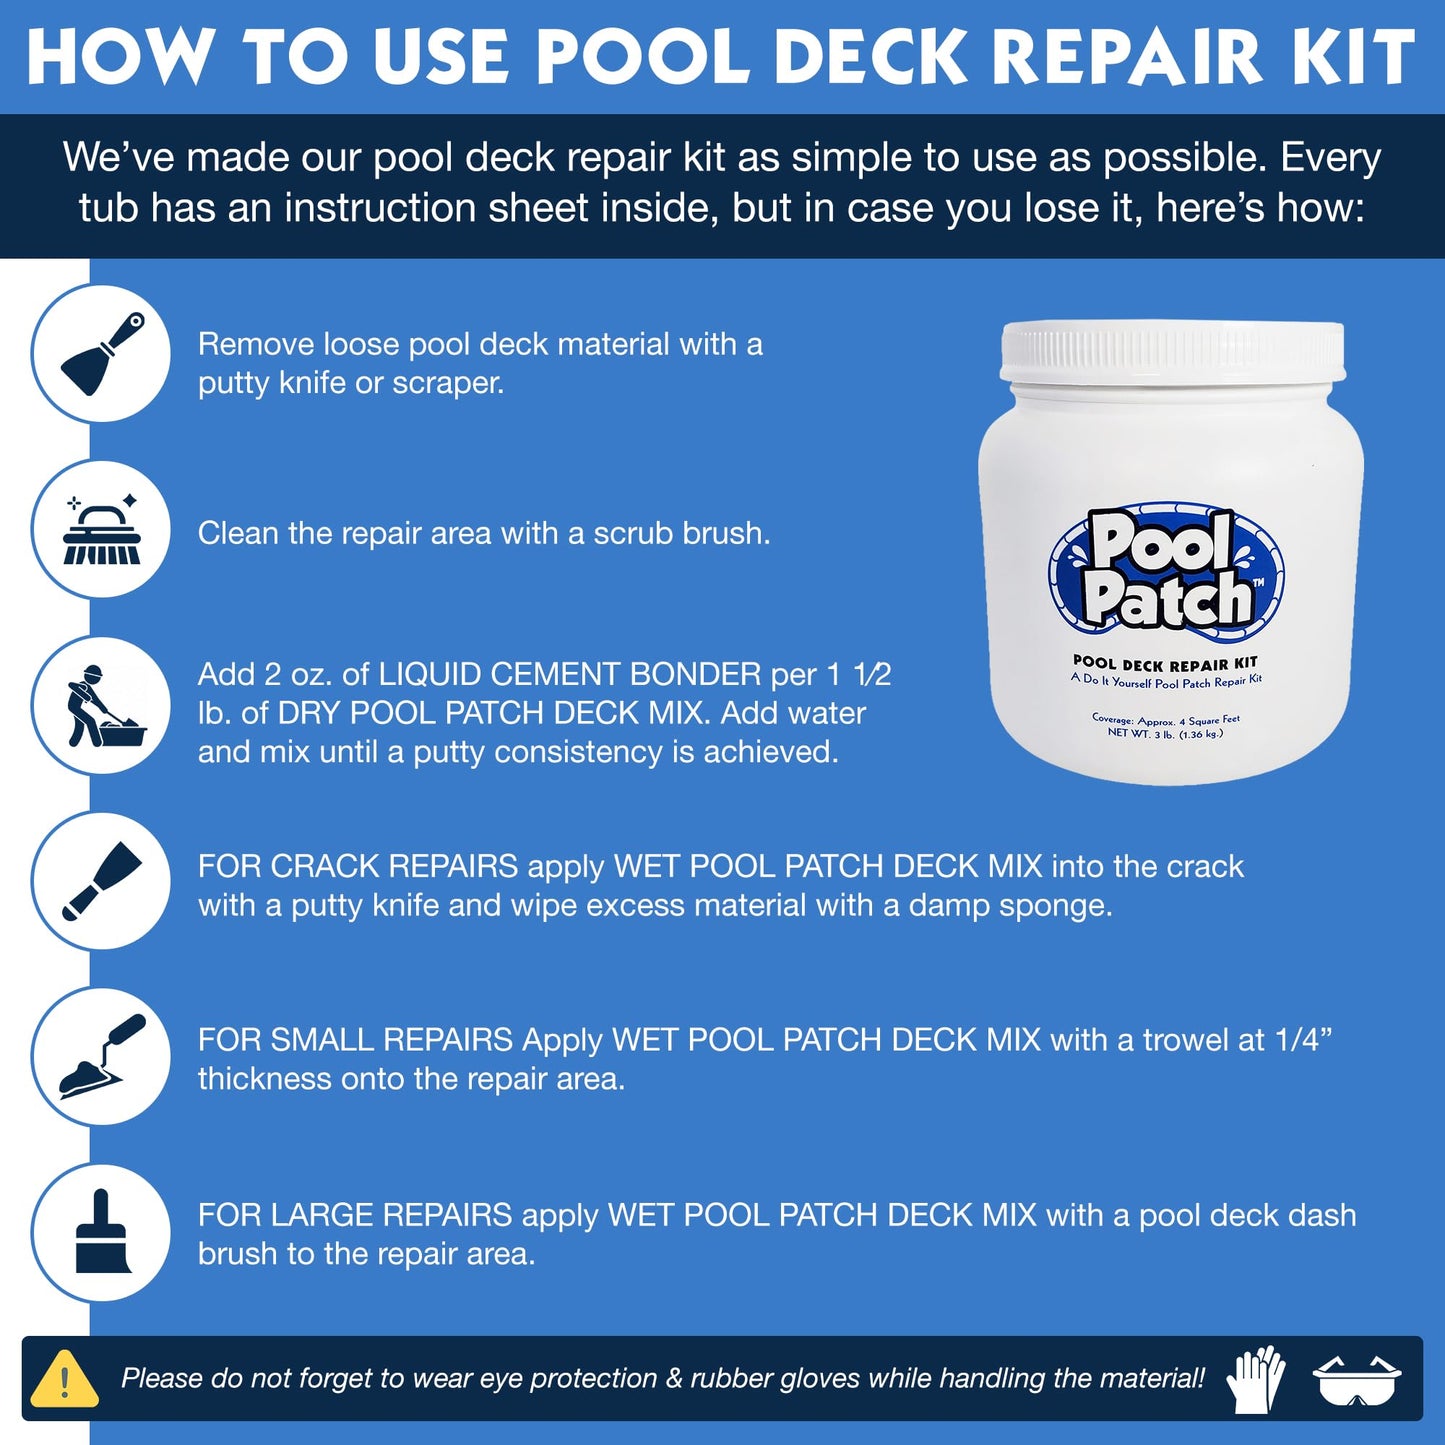 Pool Patch Pool Deck Repair Kit - Sand Buff 3lb Cool Deck Patch DIY Patio Repair